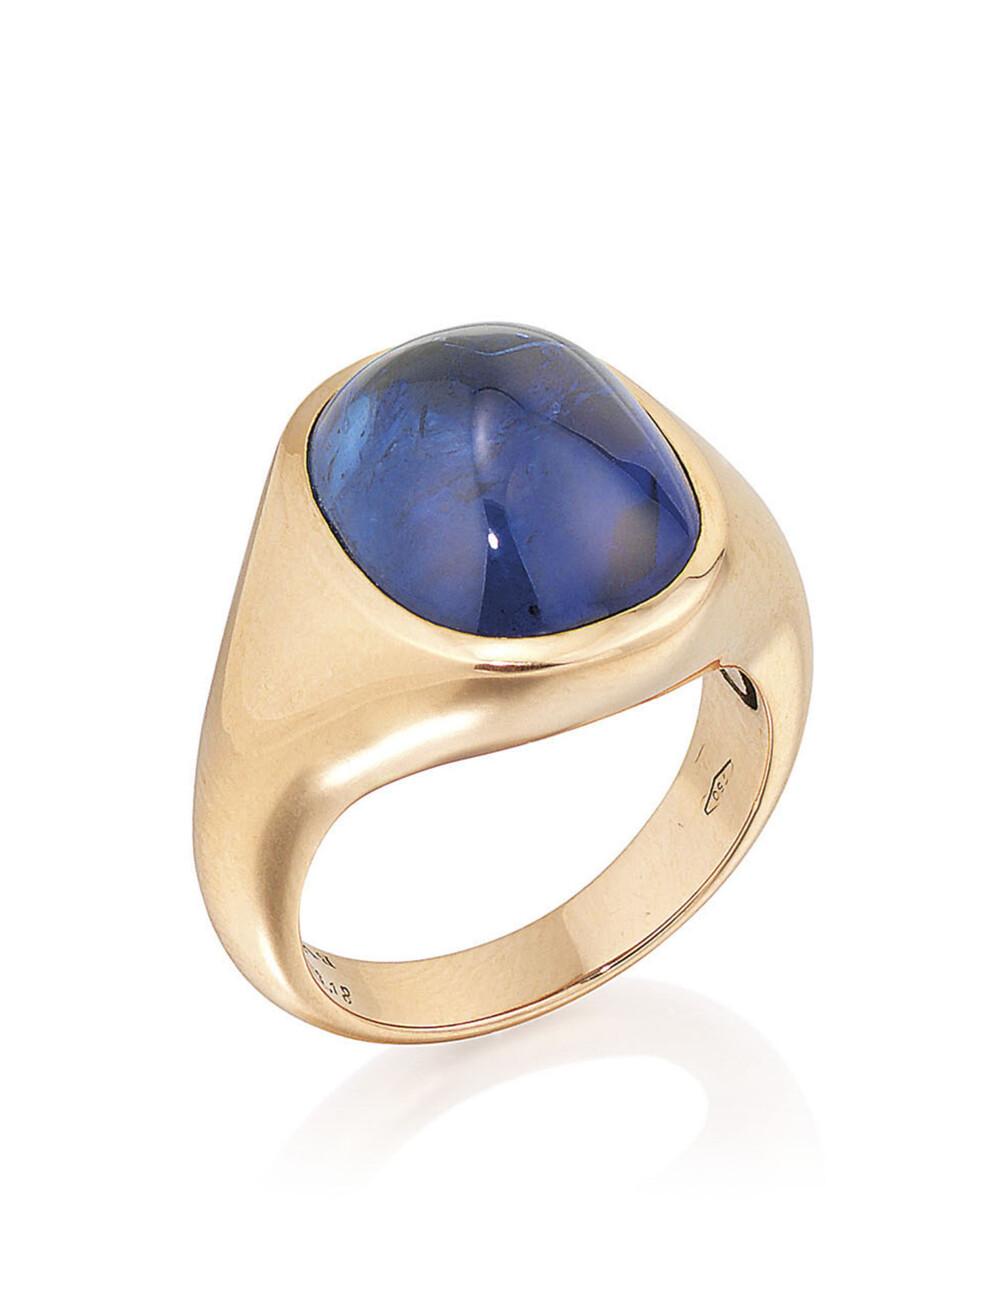 Bulgari 宝格丽 蓝宝石戒指 主石为一颗凸圆形蓝宝石，经GRS鉴定产地为斯里兰卡，没有加热的迹象，但GPL口头意见表示有加热迹象，黄金底托，尺寸为8号。成交价2万瑞郎